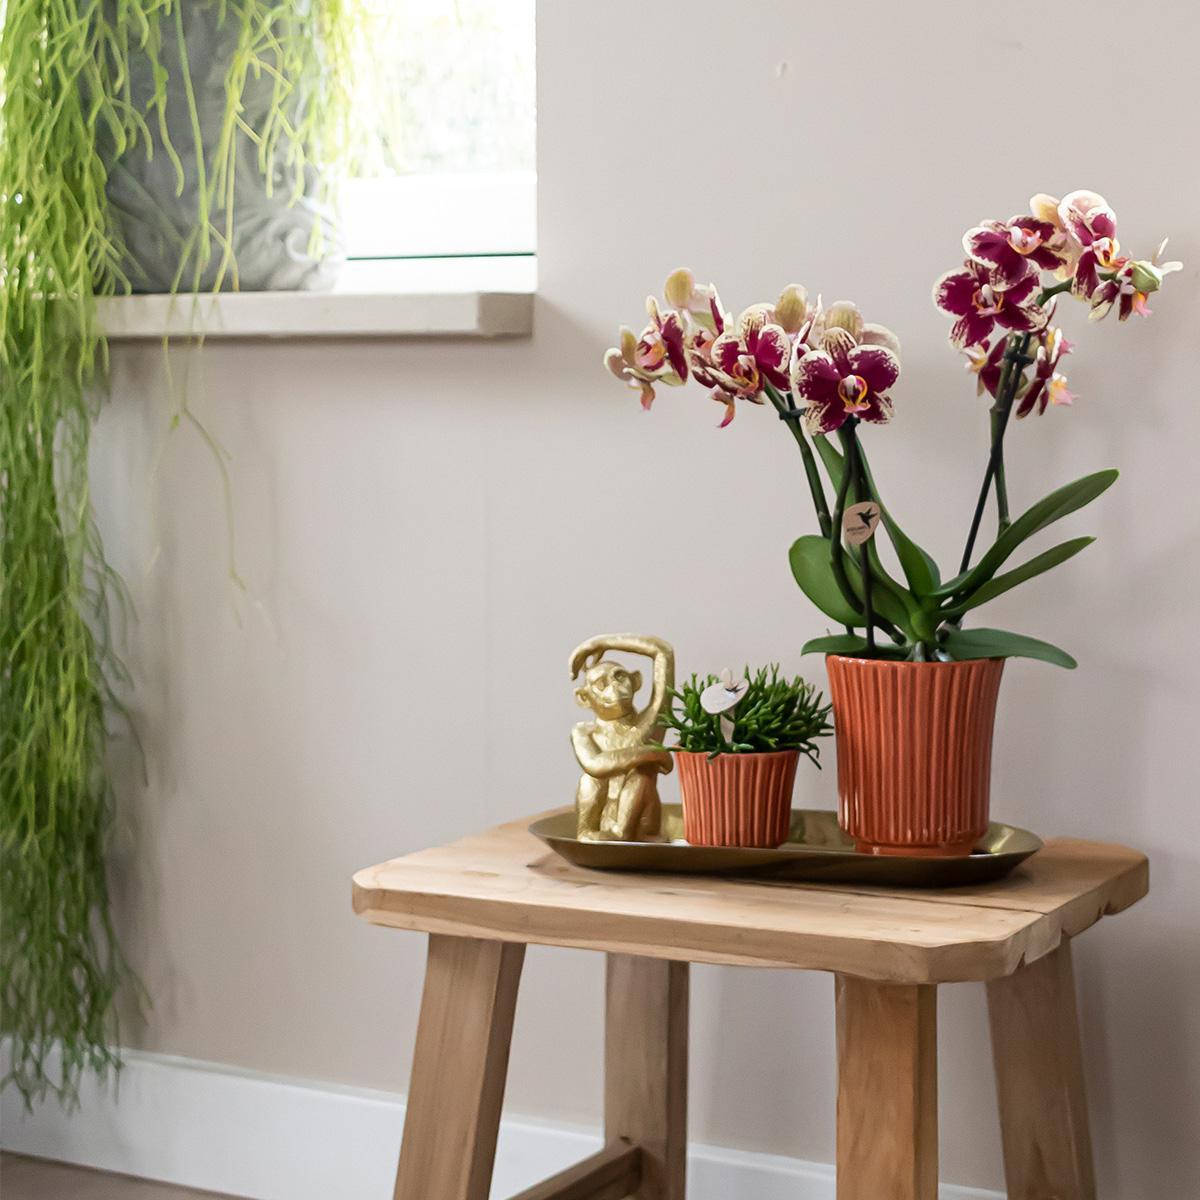 Plantenset Culture Cocktail terracotta small bevat groene planten, inclusief een Phalaenopsis orchidee, in retro terracotta sierpotten en een gouden dienblad.